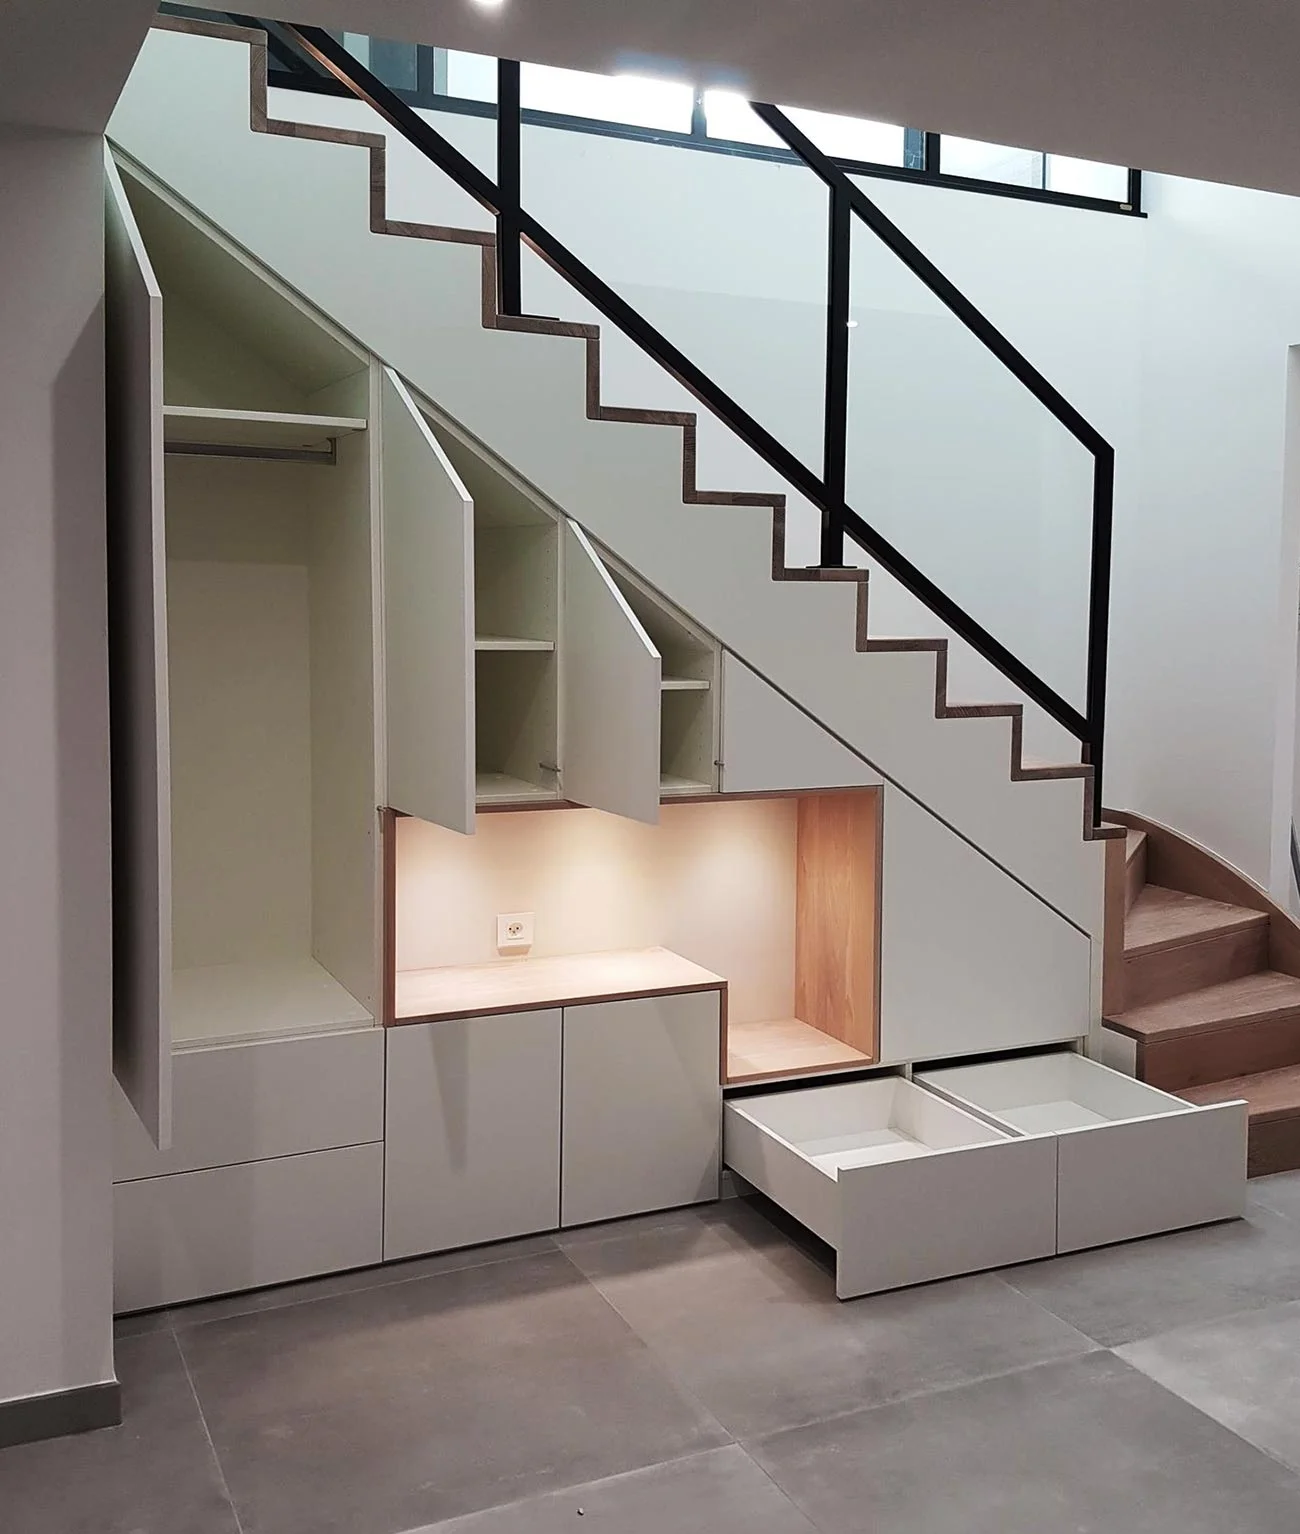 Meuble moderne rangement sous escalier  Aménagement sous escalier,  Rangement sous escalier, Decoration sous escalier